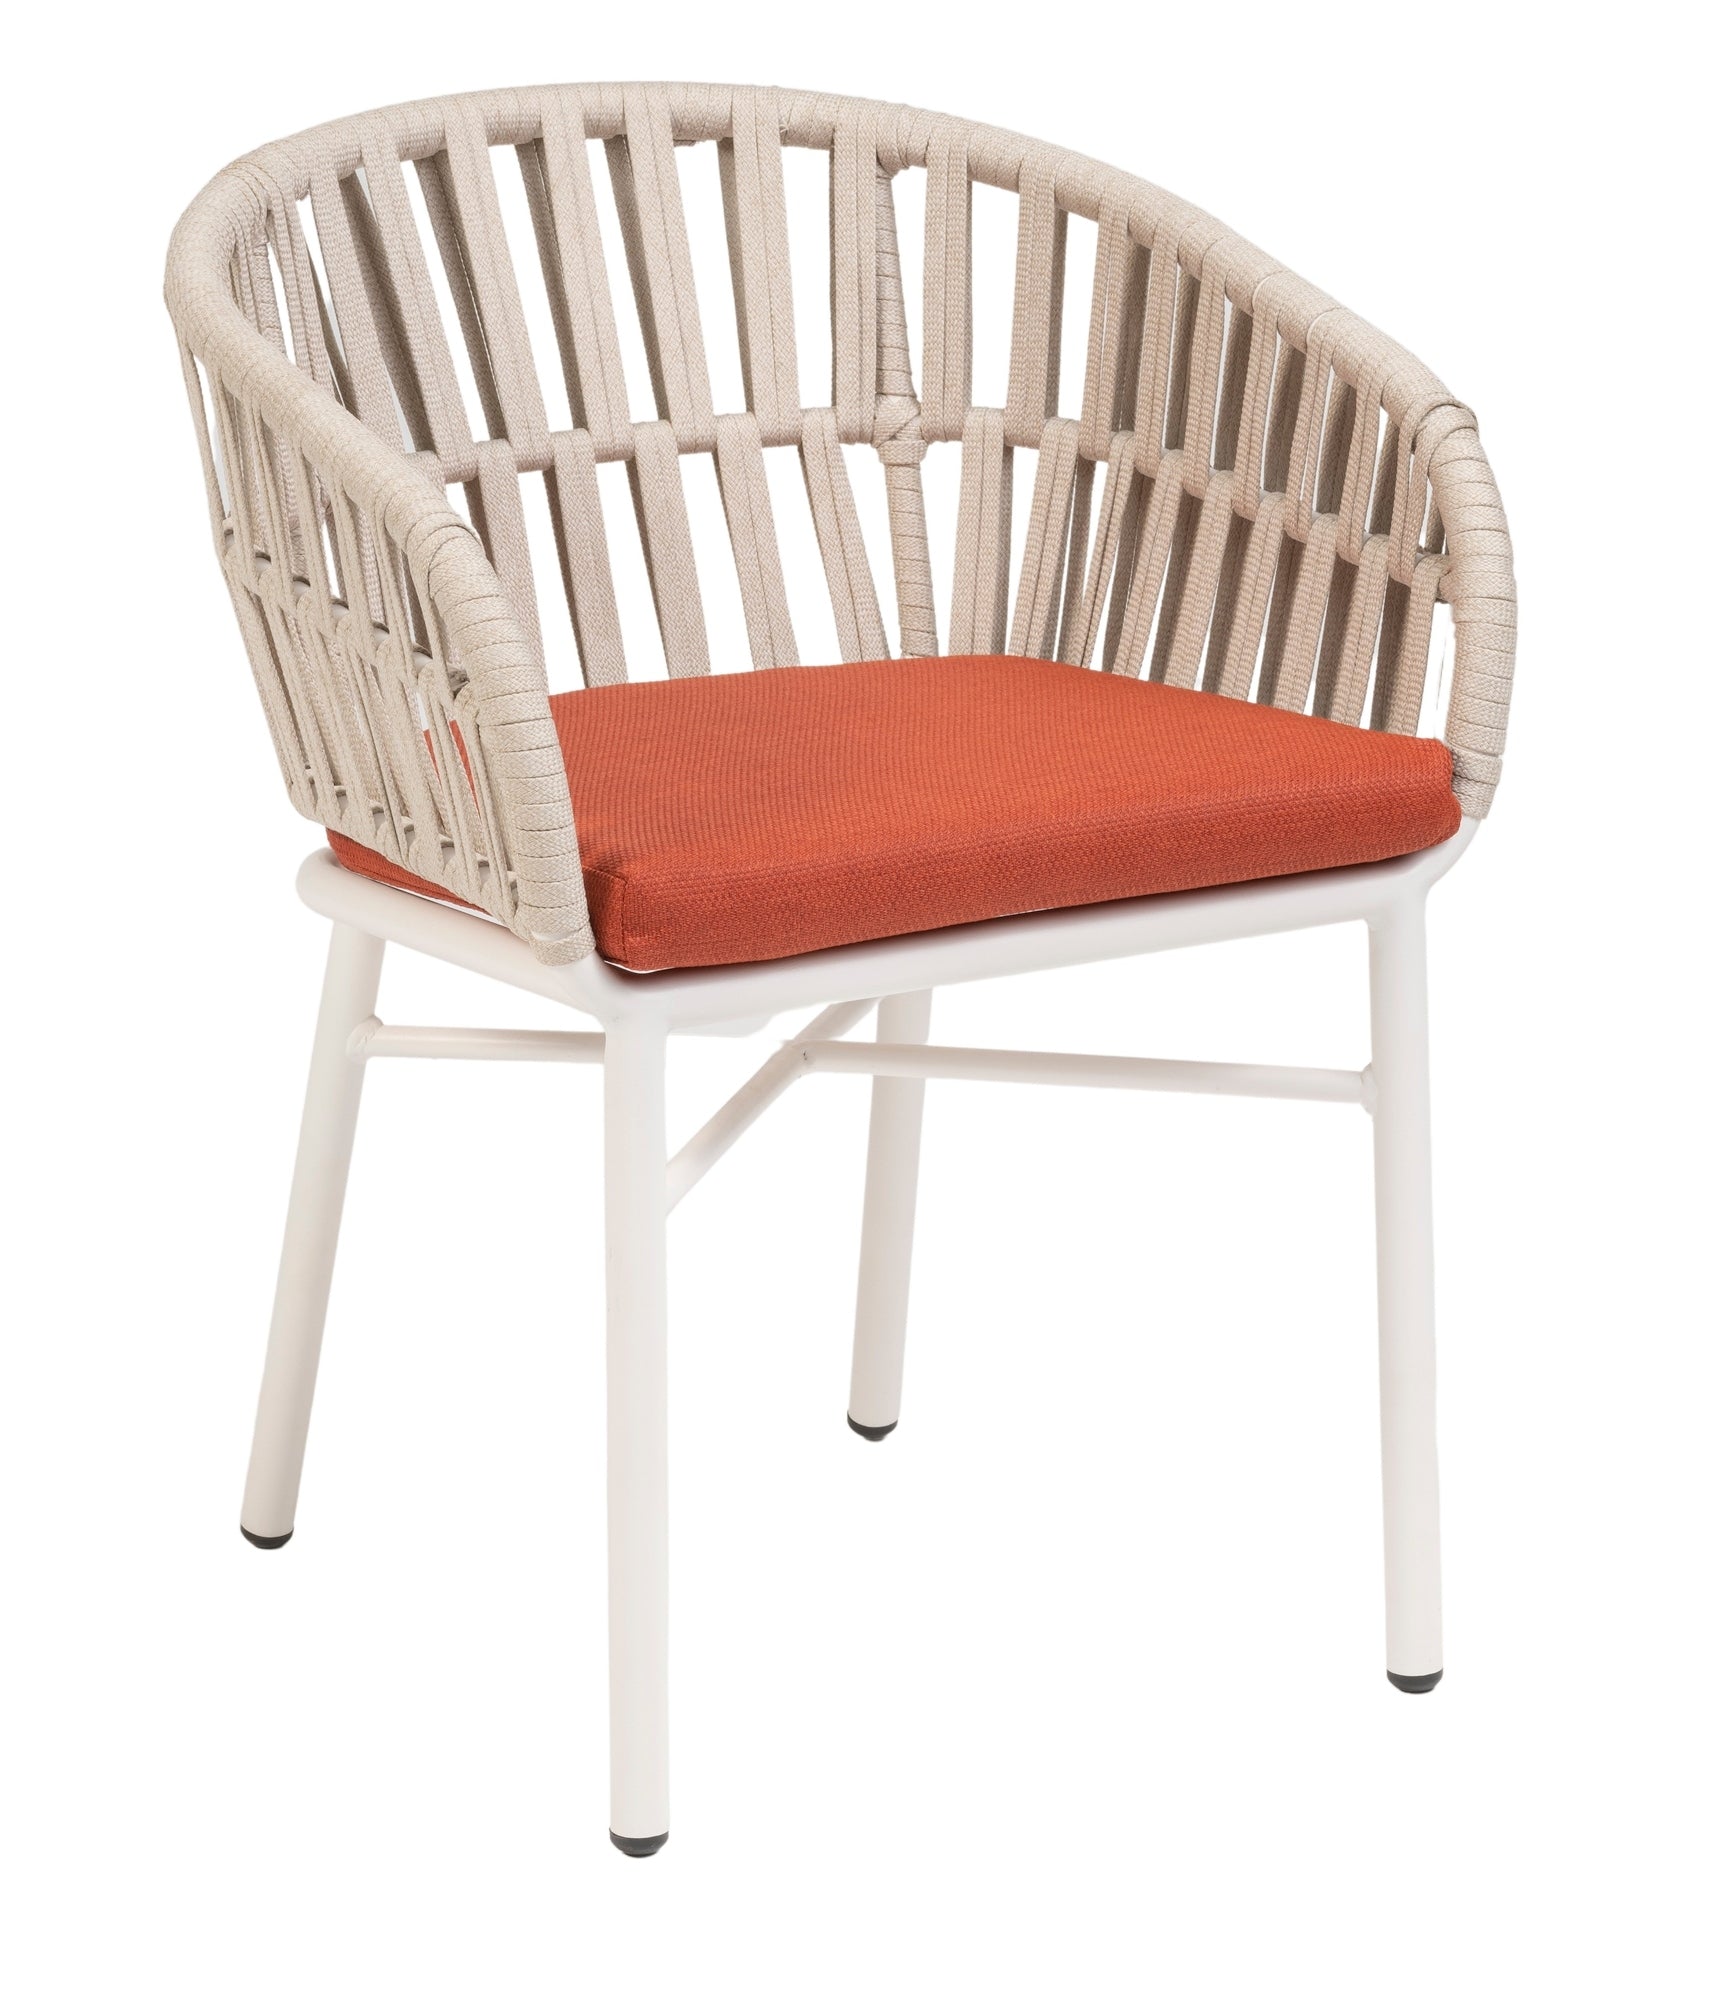 Gartenstuhl Beatrix in Weiß mit Terracotta oder Creme Textilschnüren und komfortablem Sitzkissen, ideal für moderne Außenbereiche.